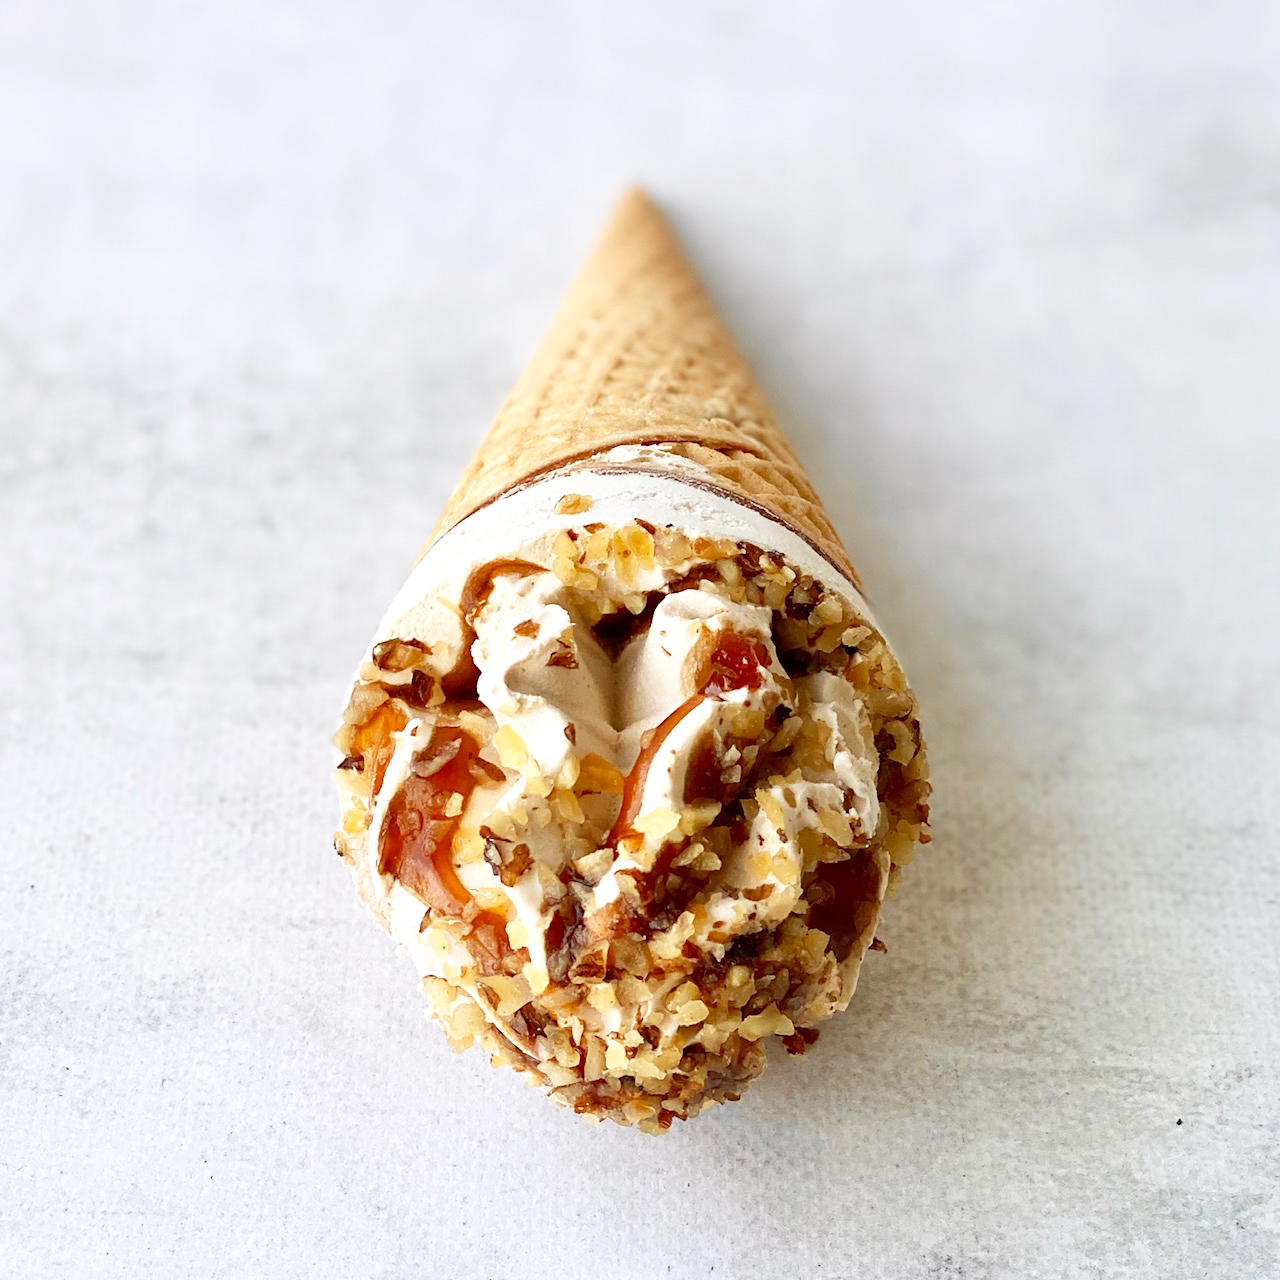 Мороженое сливочное с ароматом грецкого ореха, декорированное кленовым сиропом и грецким орехом в сахарном вафельном рожке с шоколадной глазурью изображение 3